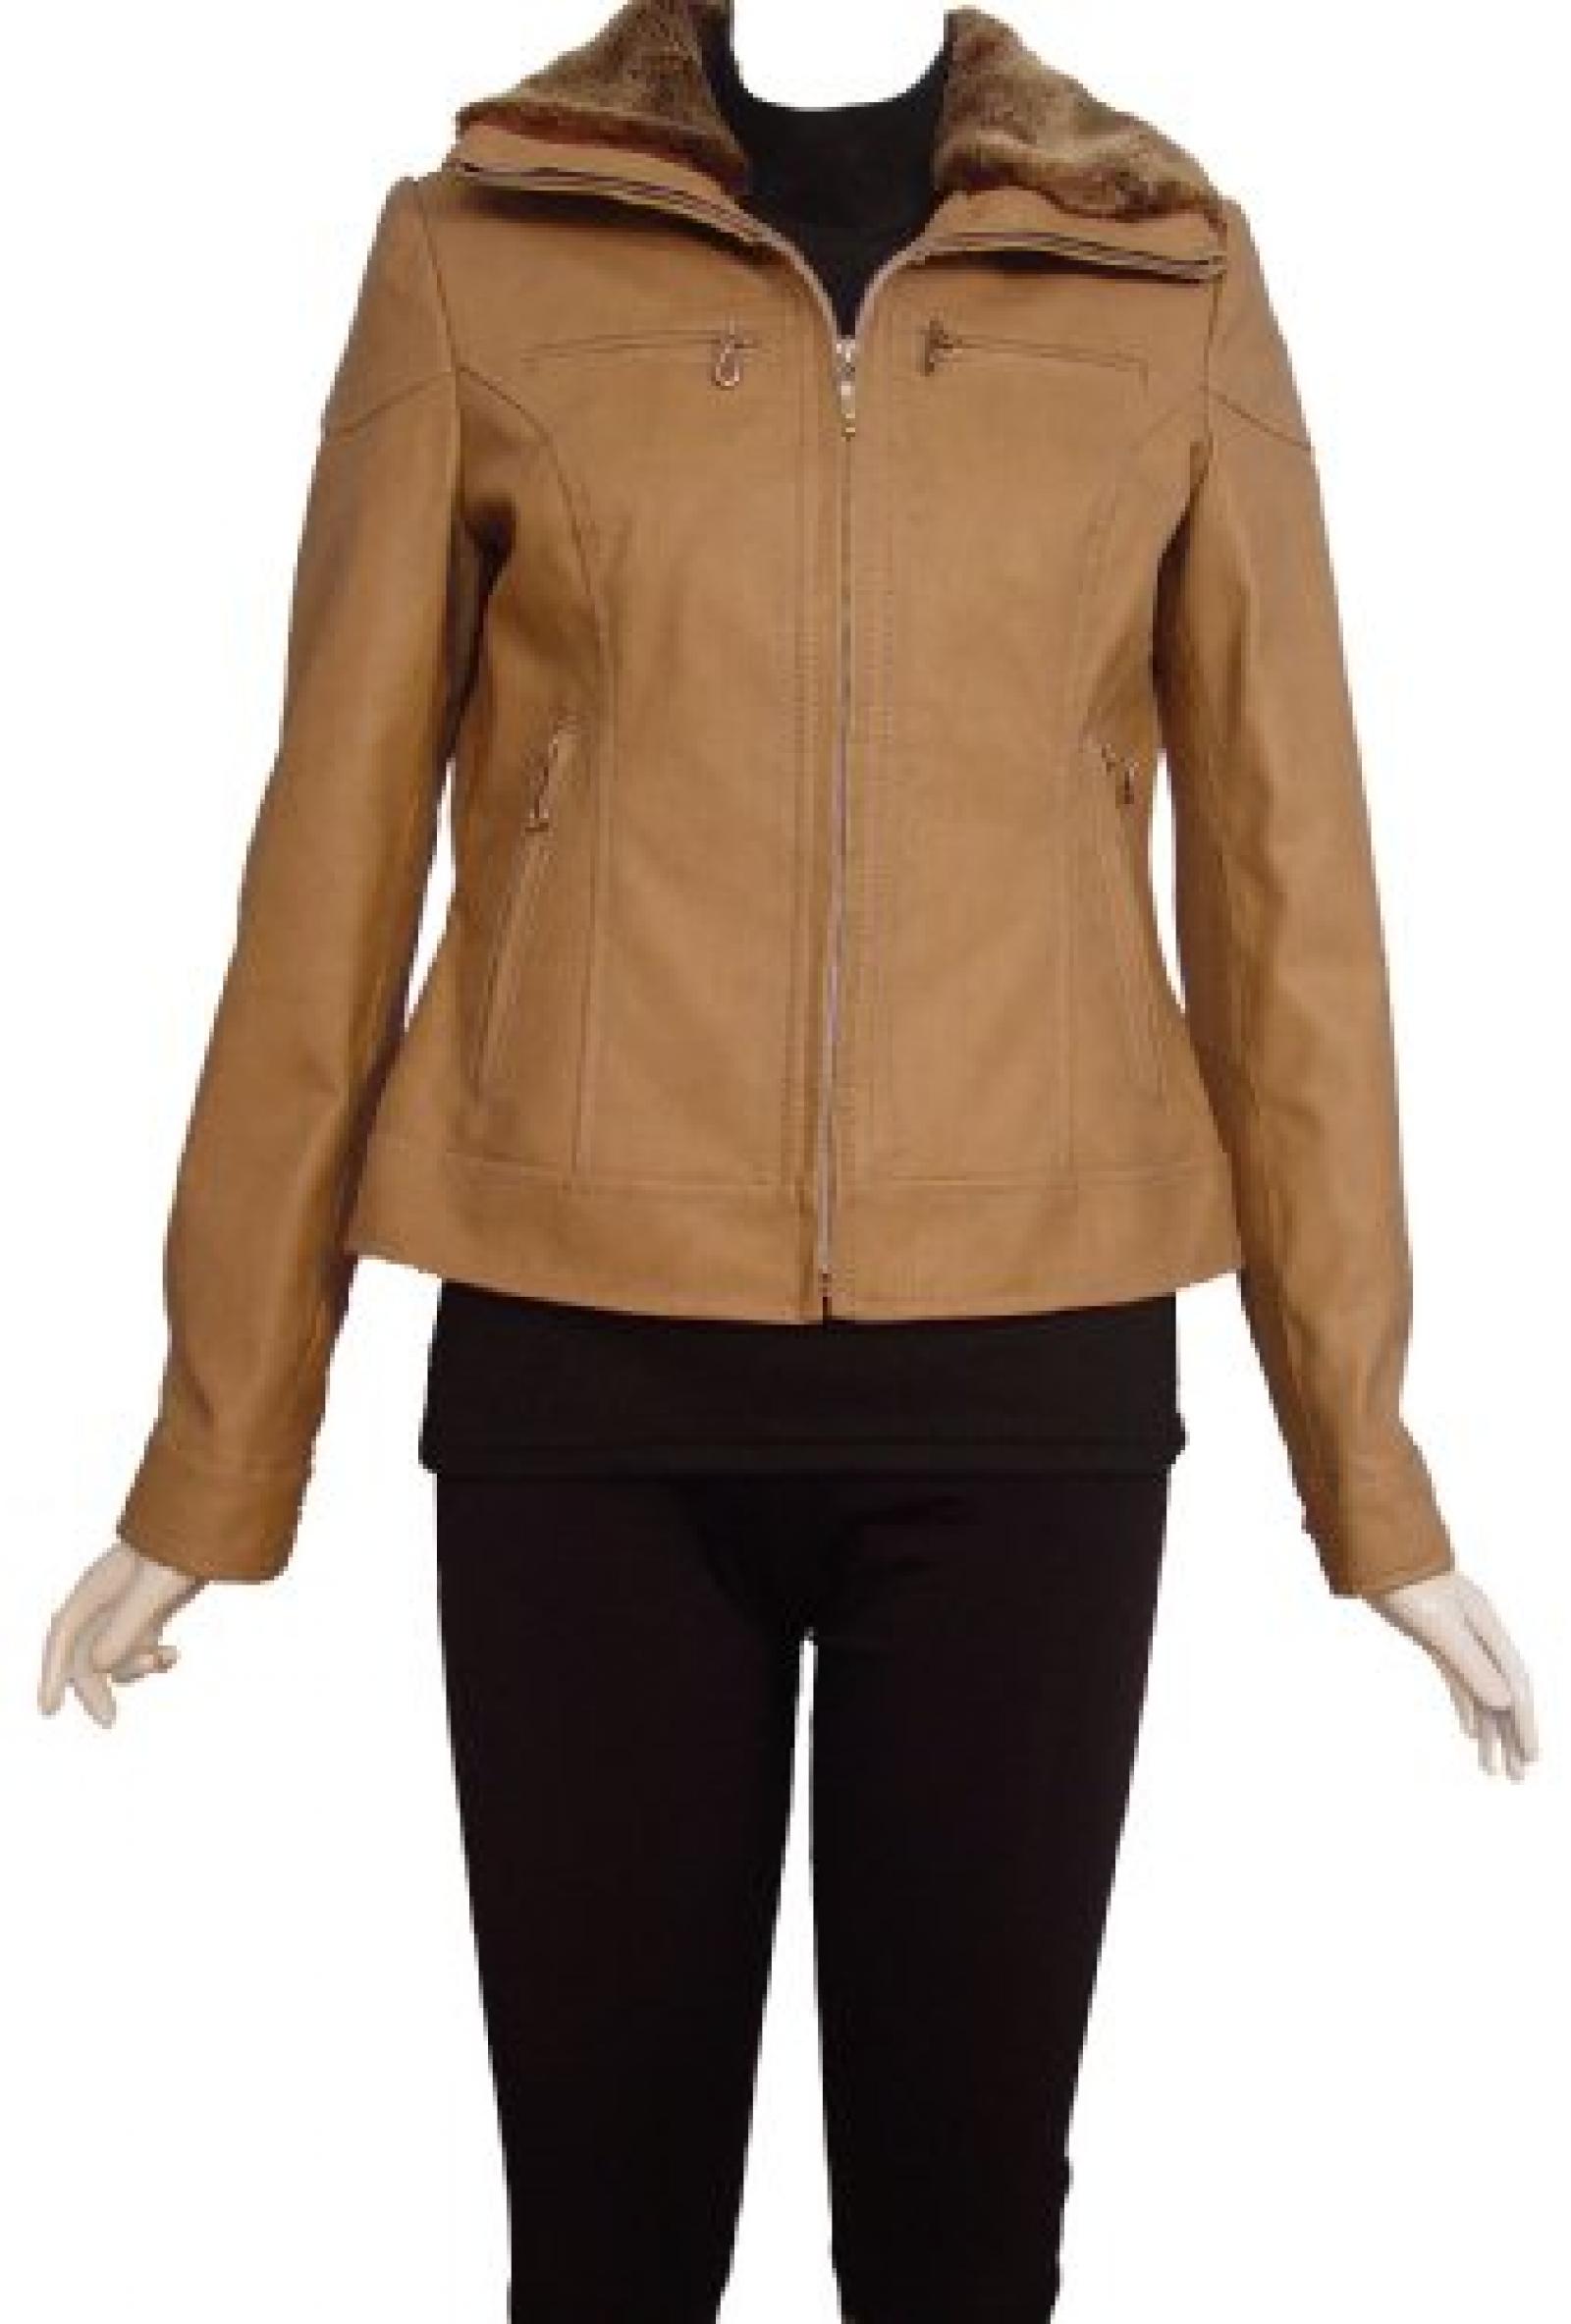 Nettailor Women PETITE SZ 4088 Lambskin Leather Casual Jacket Faux Fur Collar 